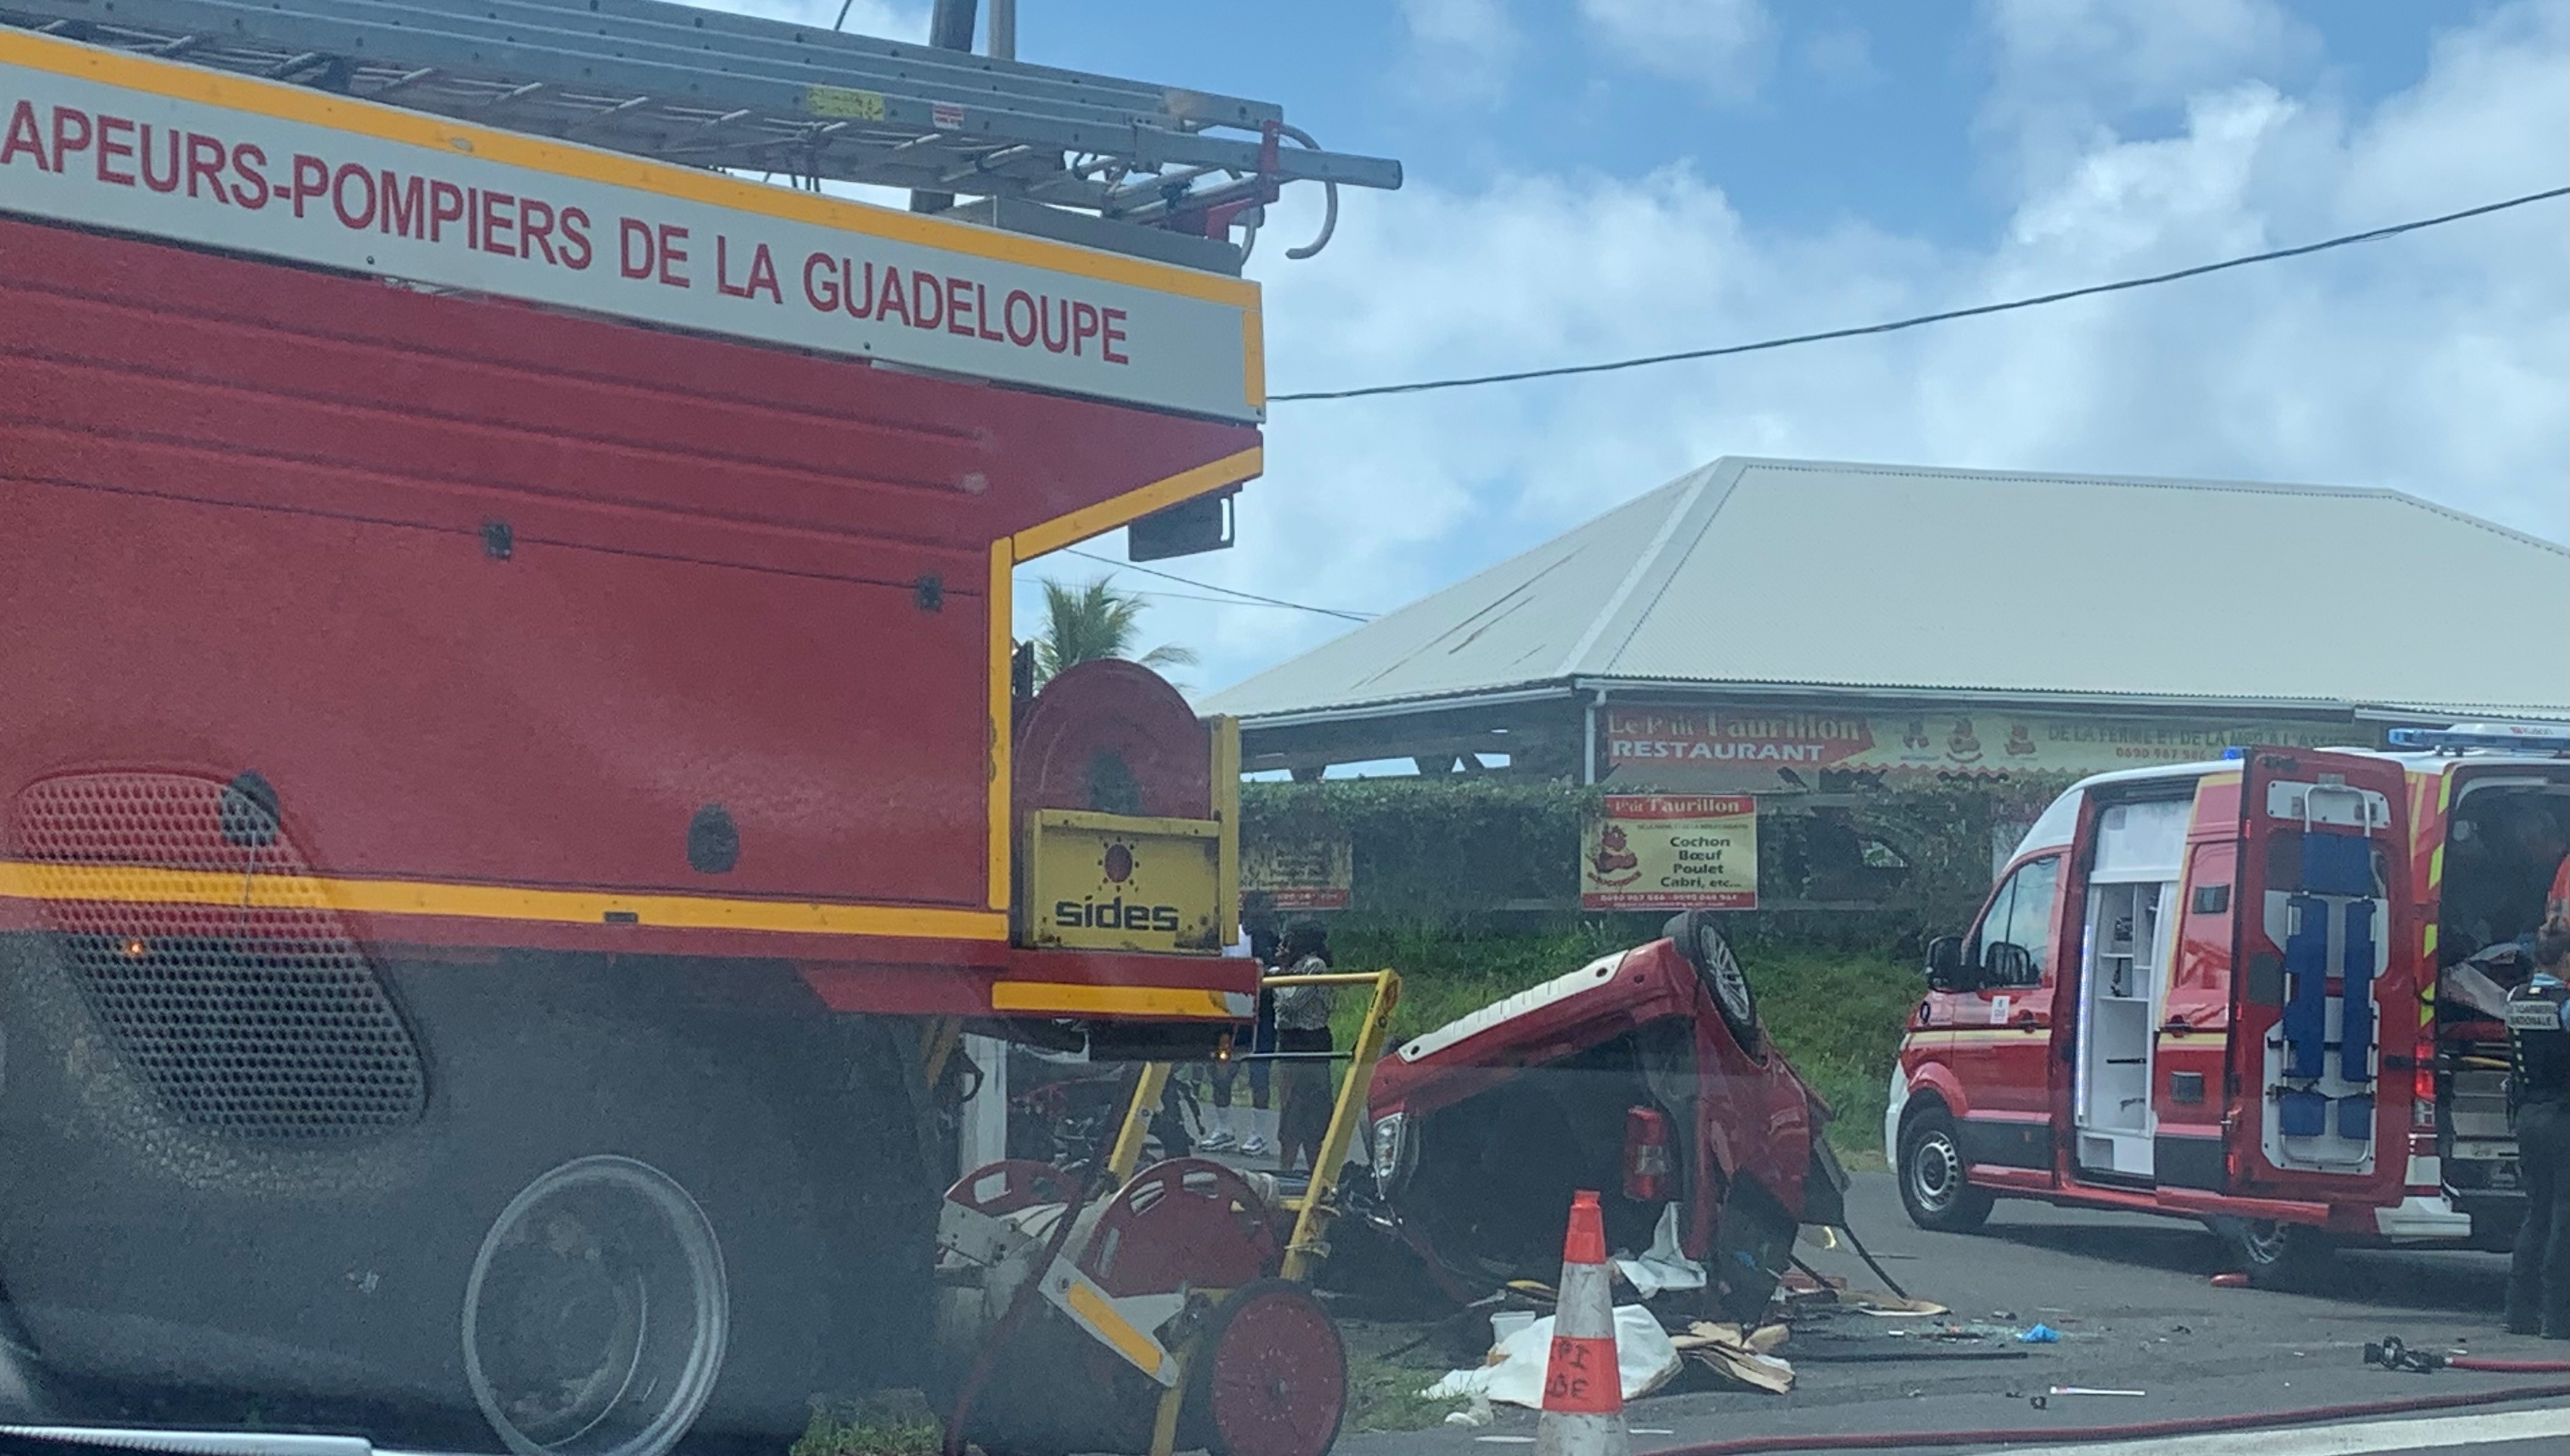     2 blessés graves dans un accident de la route à Capesterre-Belle-Eau

